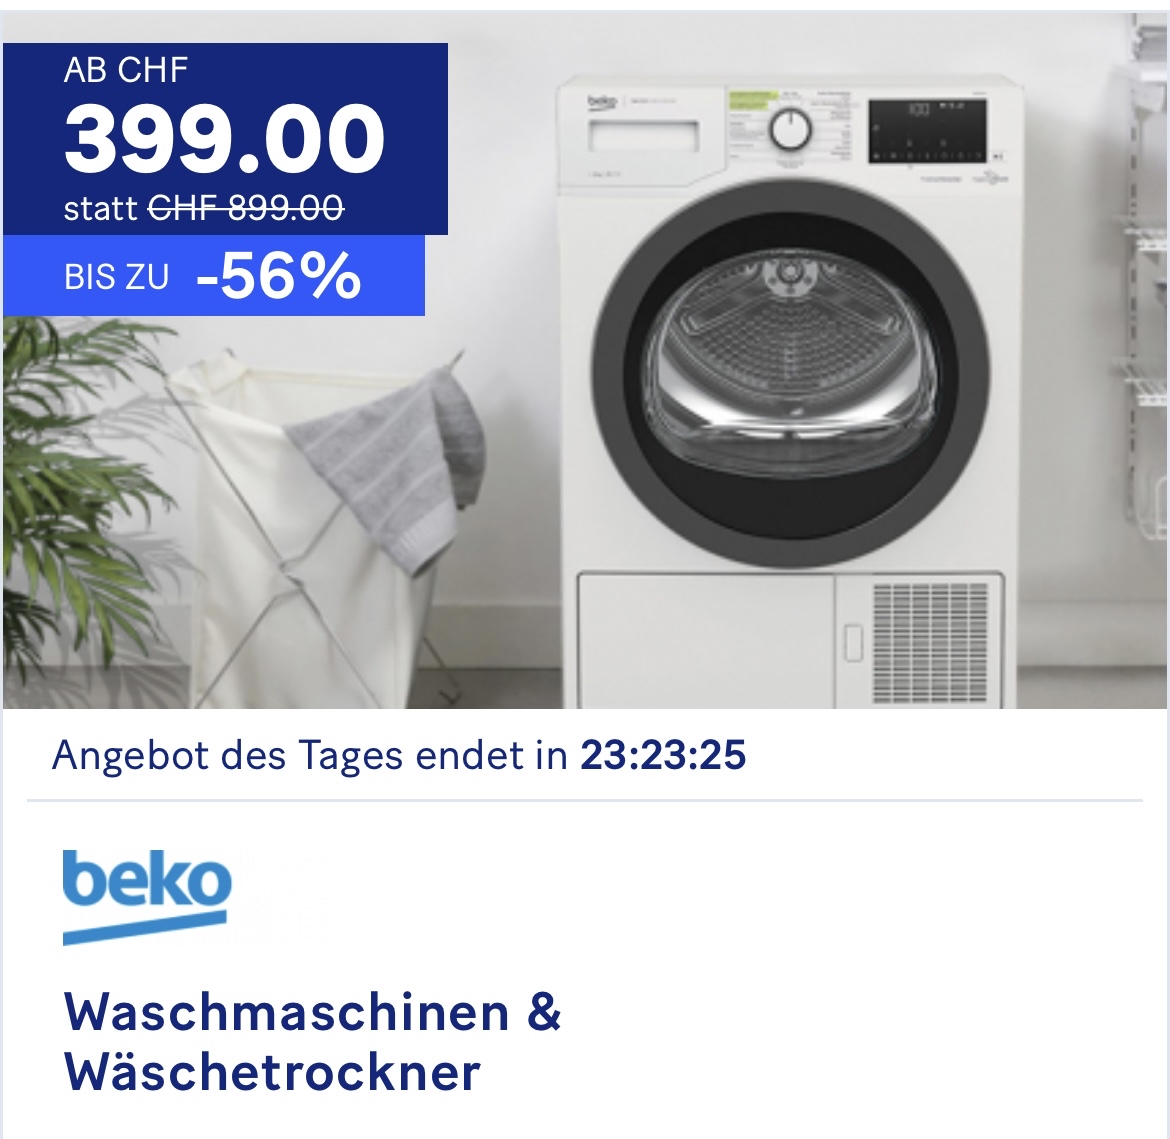 Beko Waschmaschine und Wäschetrockner zum Toppreis bei den 20 Minuten Deals